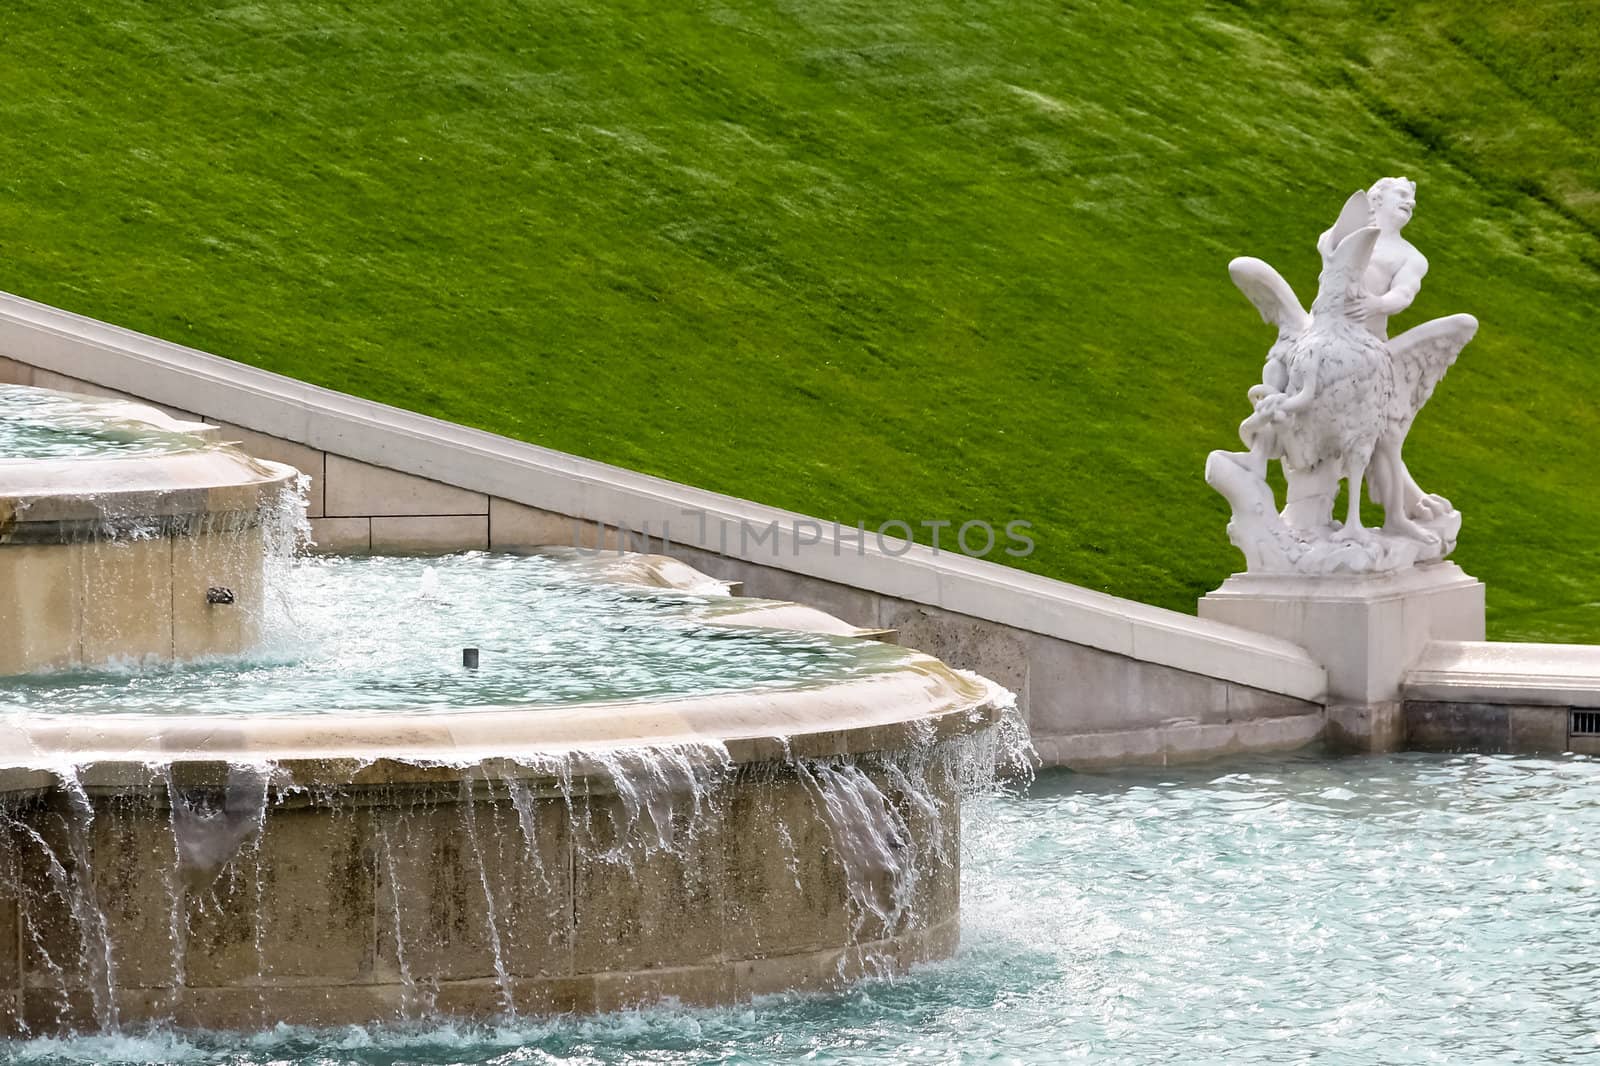 An overflowing fountain in castle Belvedere, Vienna, Austria